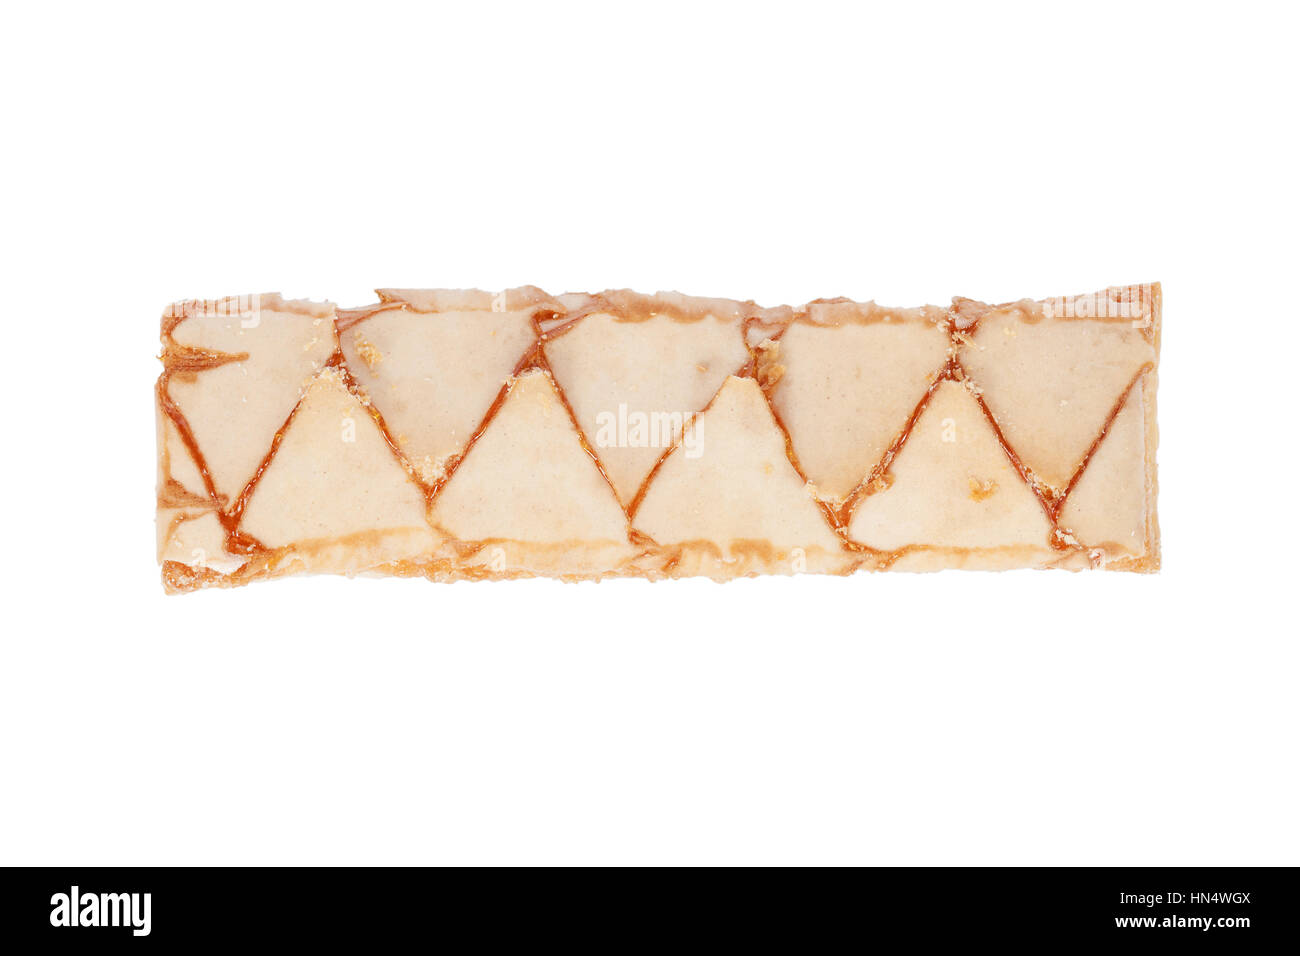 Sfogliatine italien, une pâte feuilletée, isolé sur fond blanc Banque D'Images